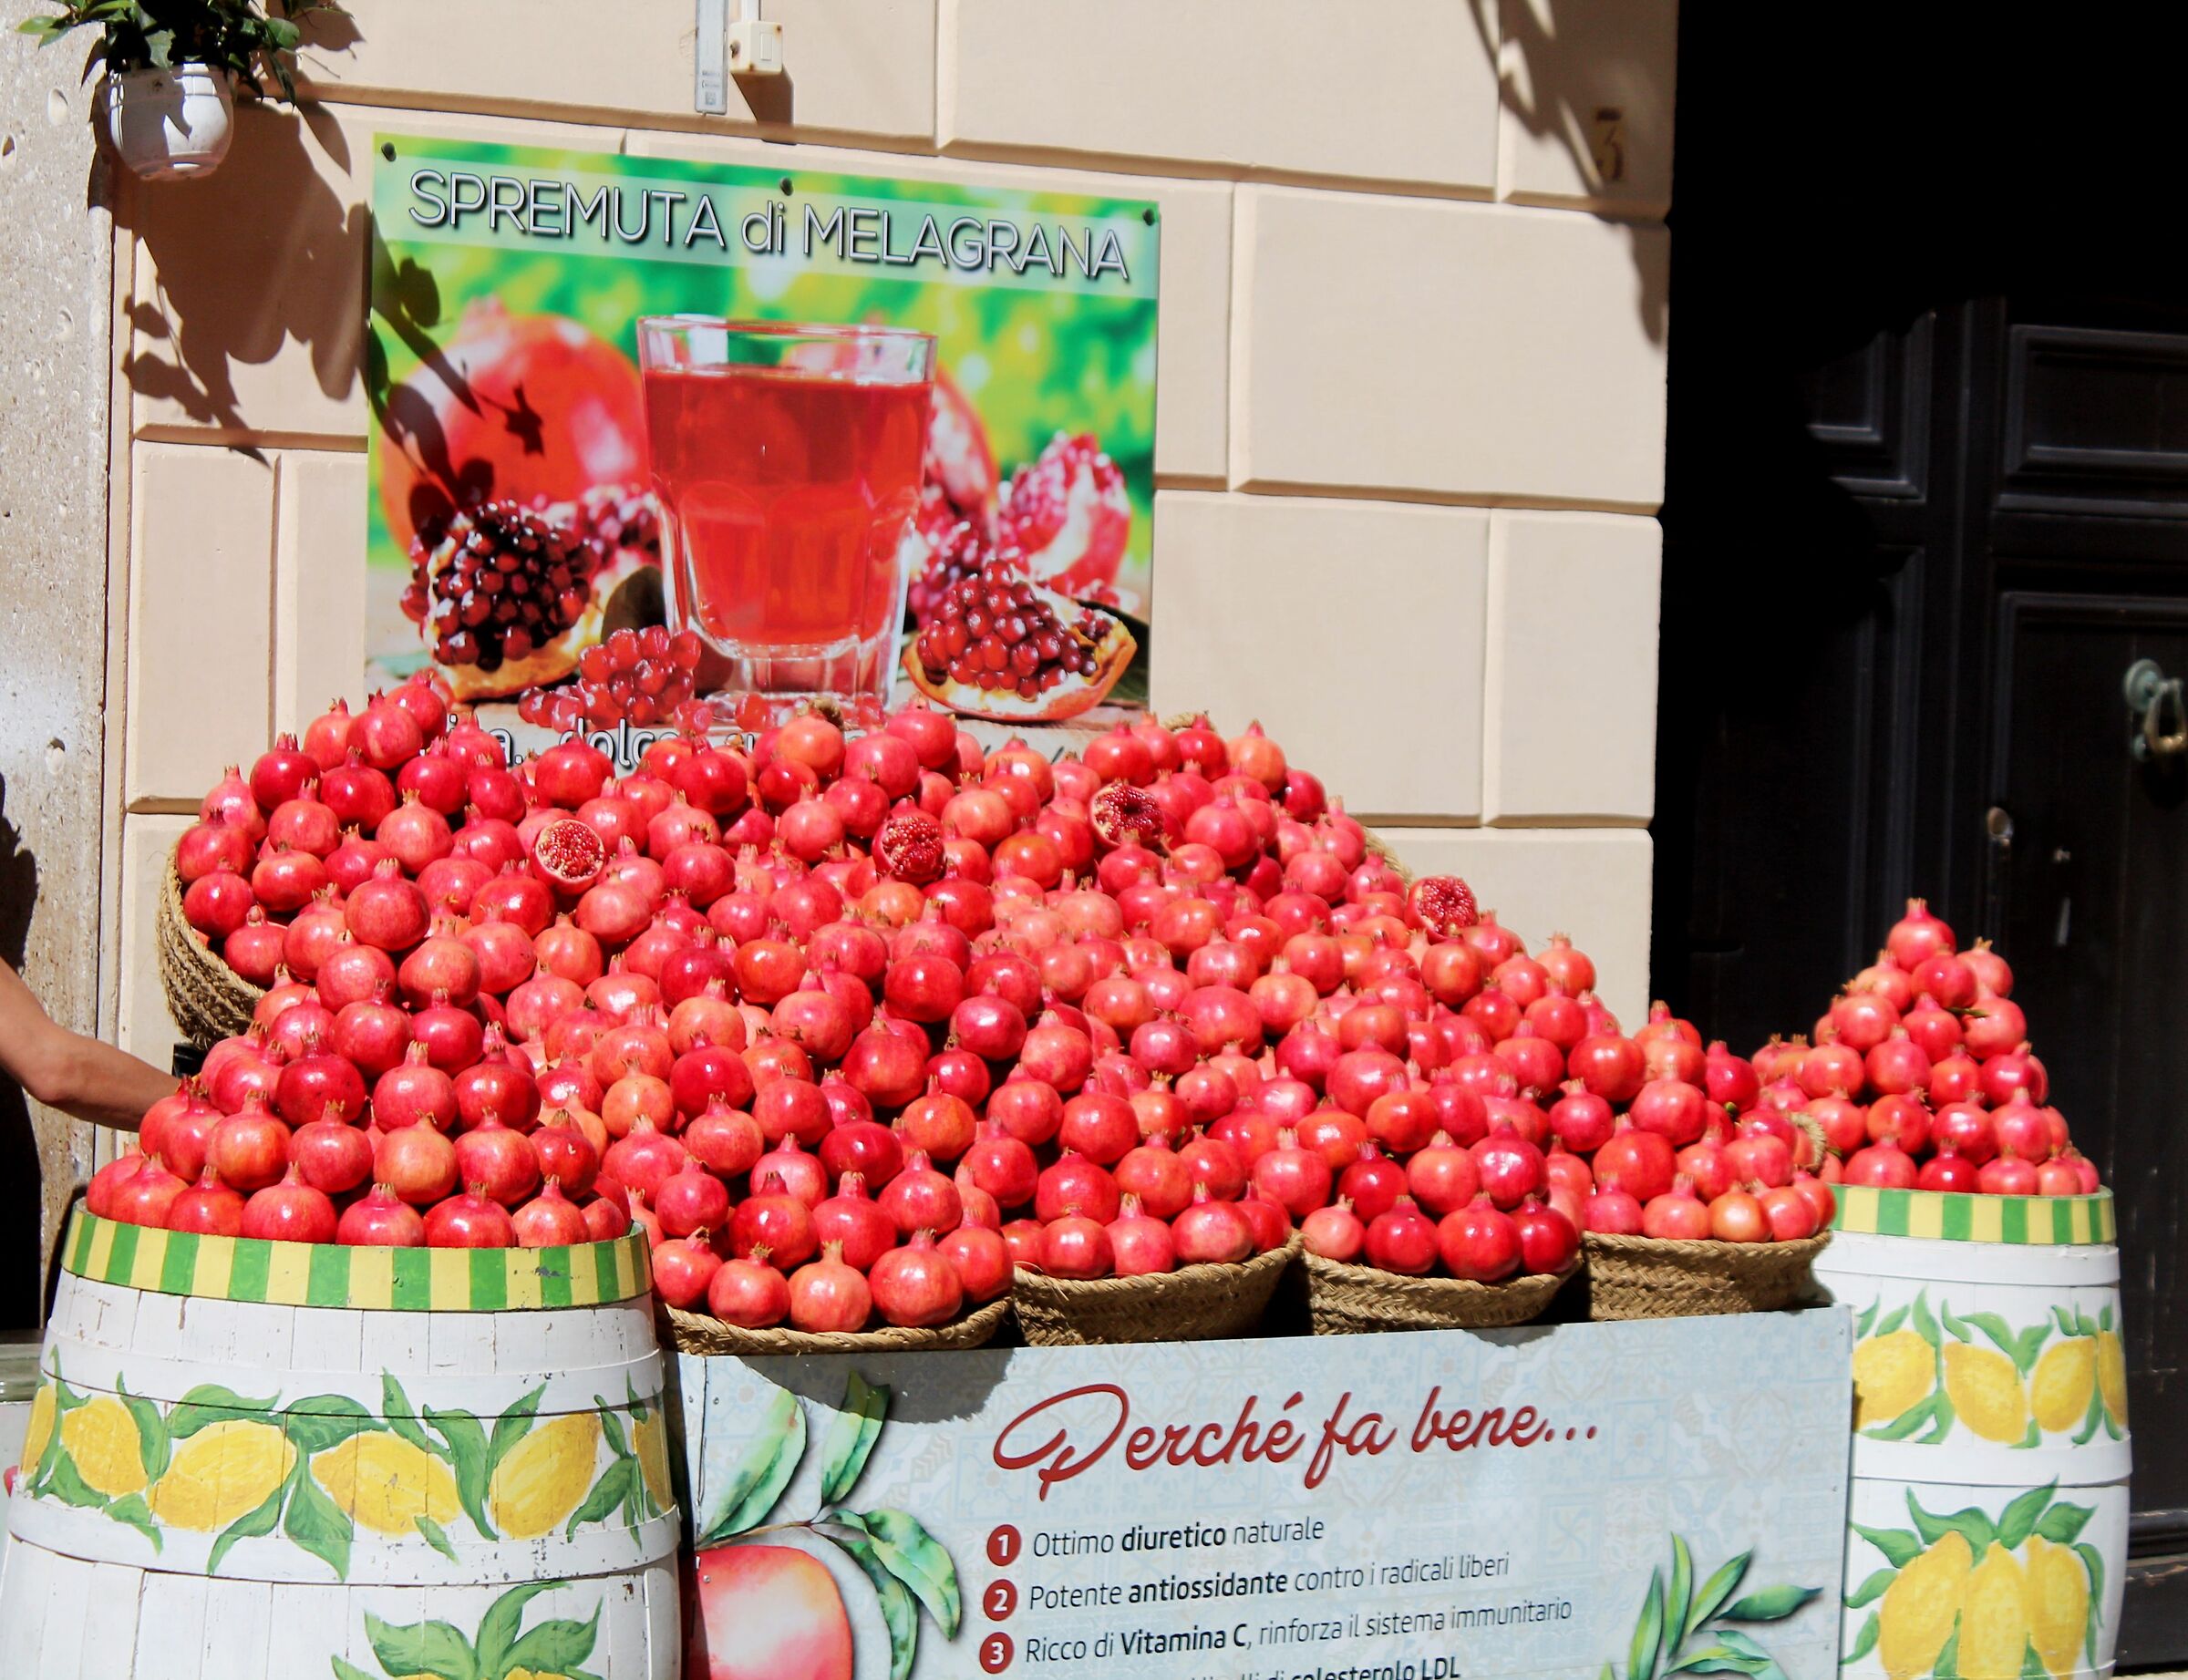 The pomegranates of Trapani...